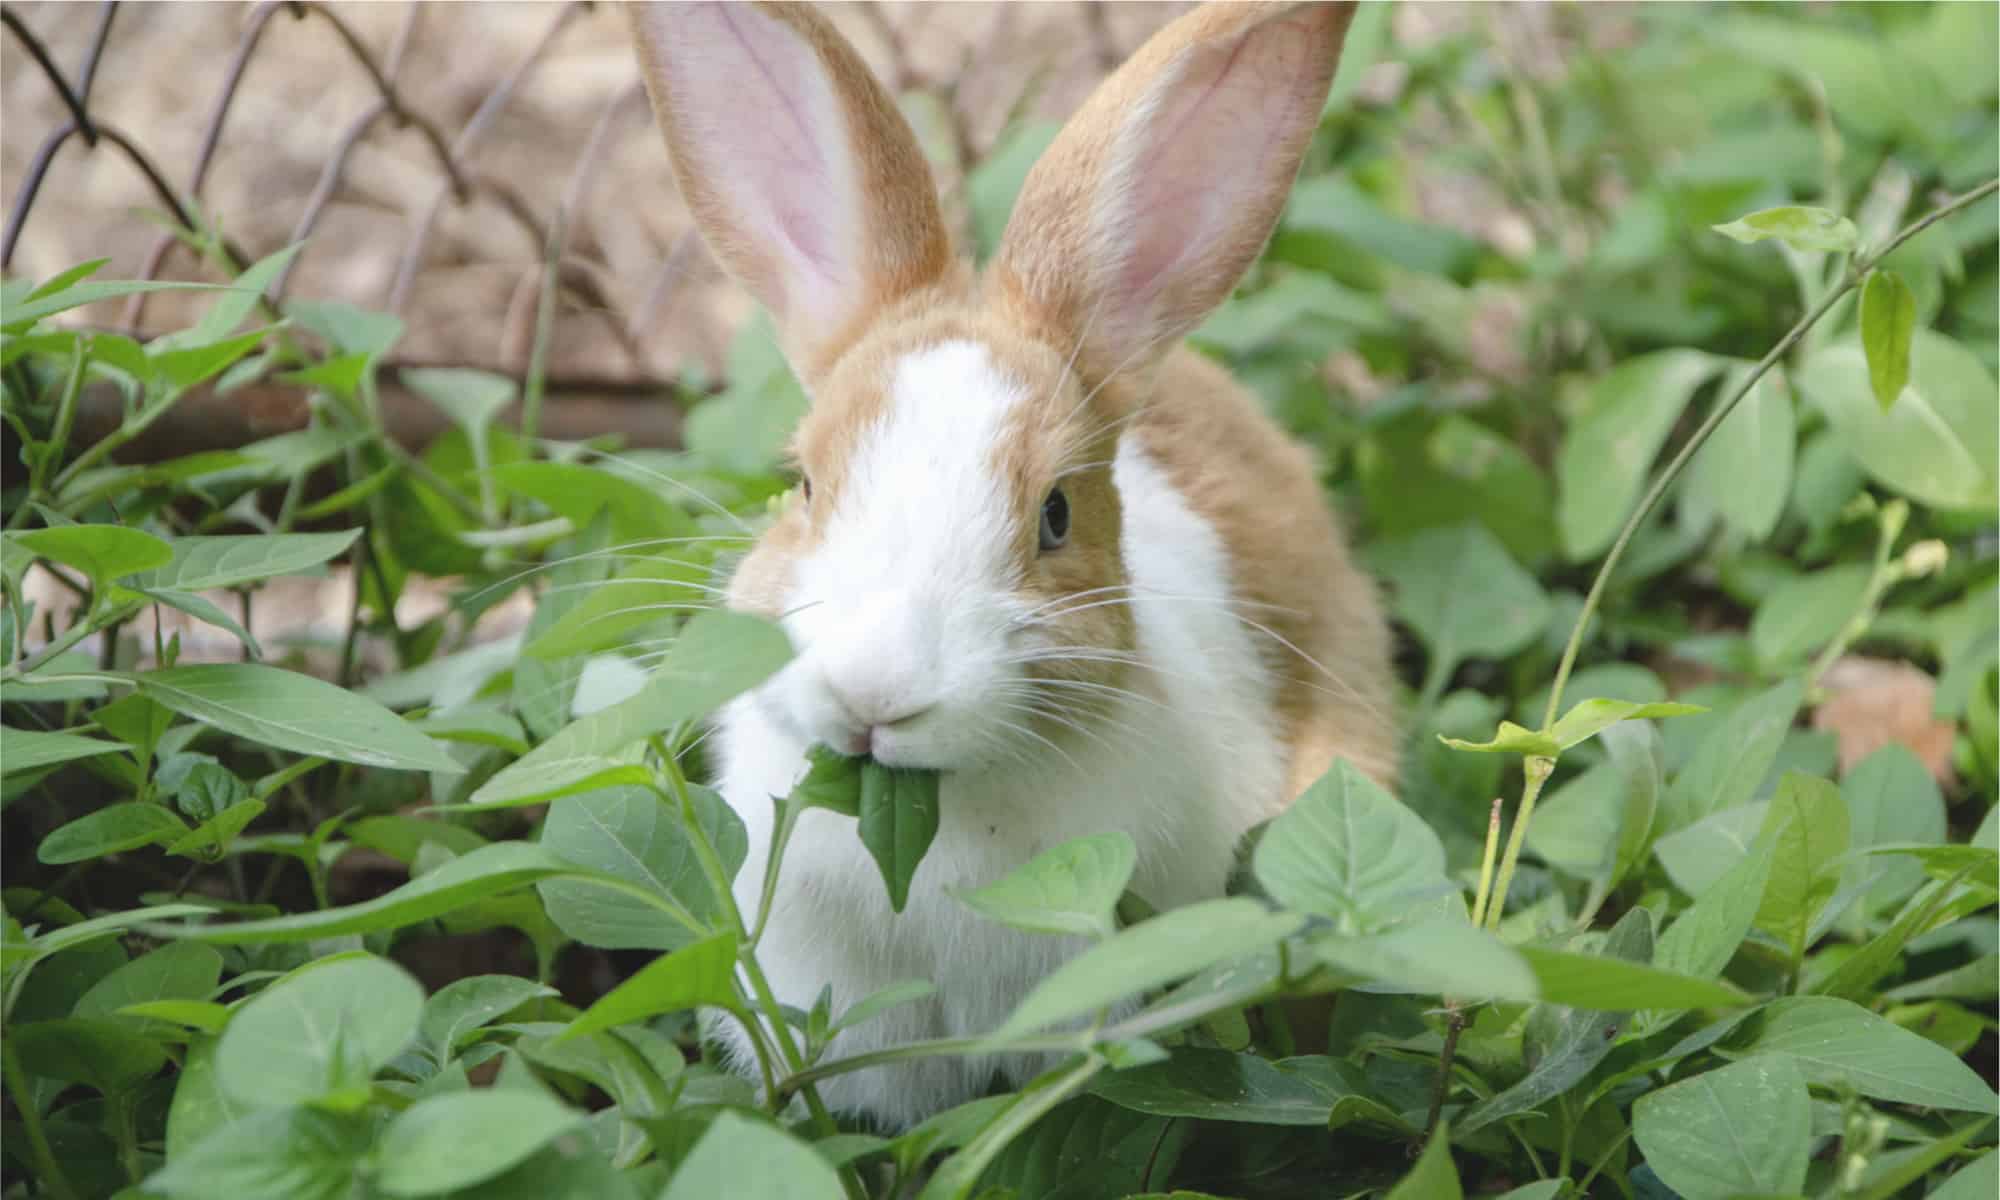 Munching bunny : r/Rabbits